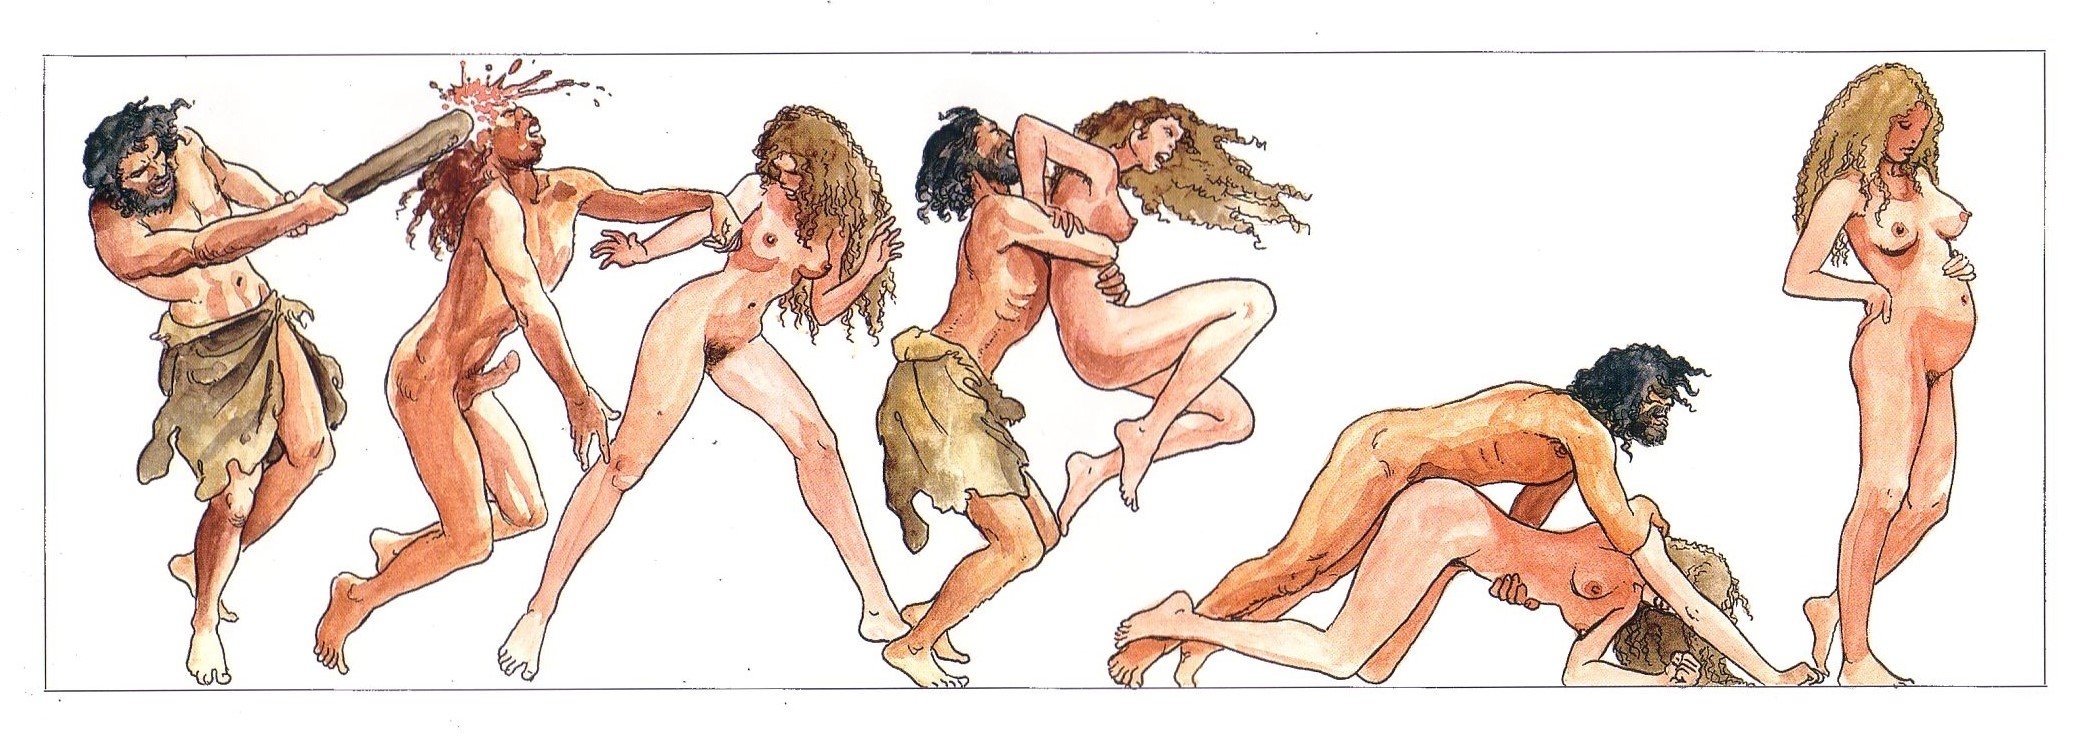 древняя история о эротики фото 5